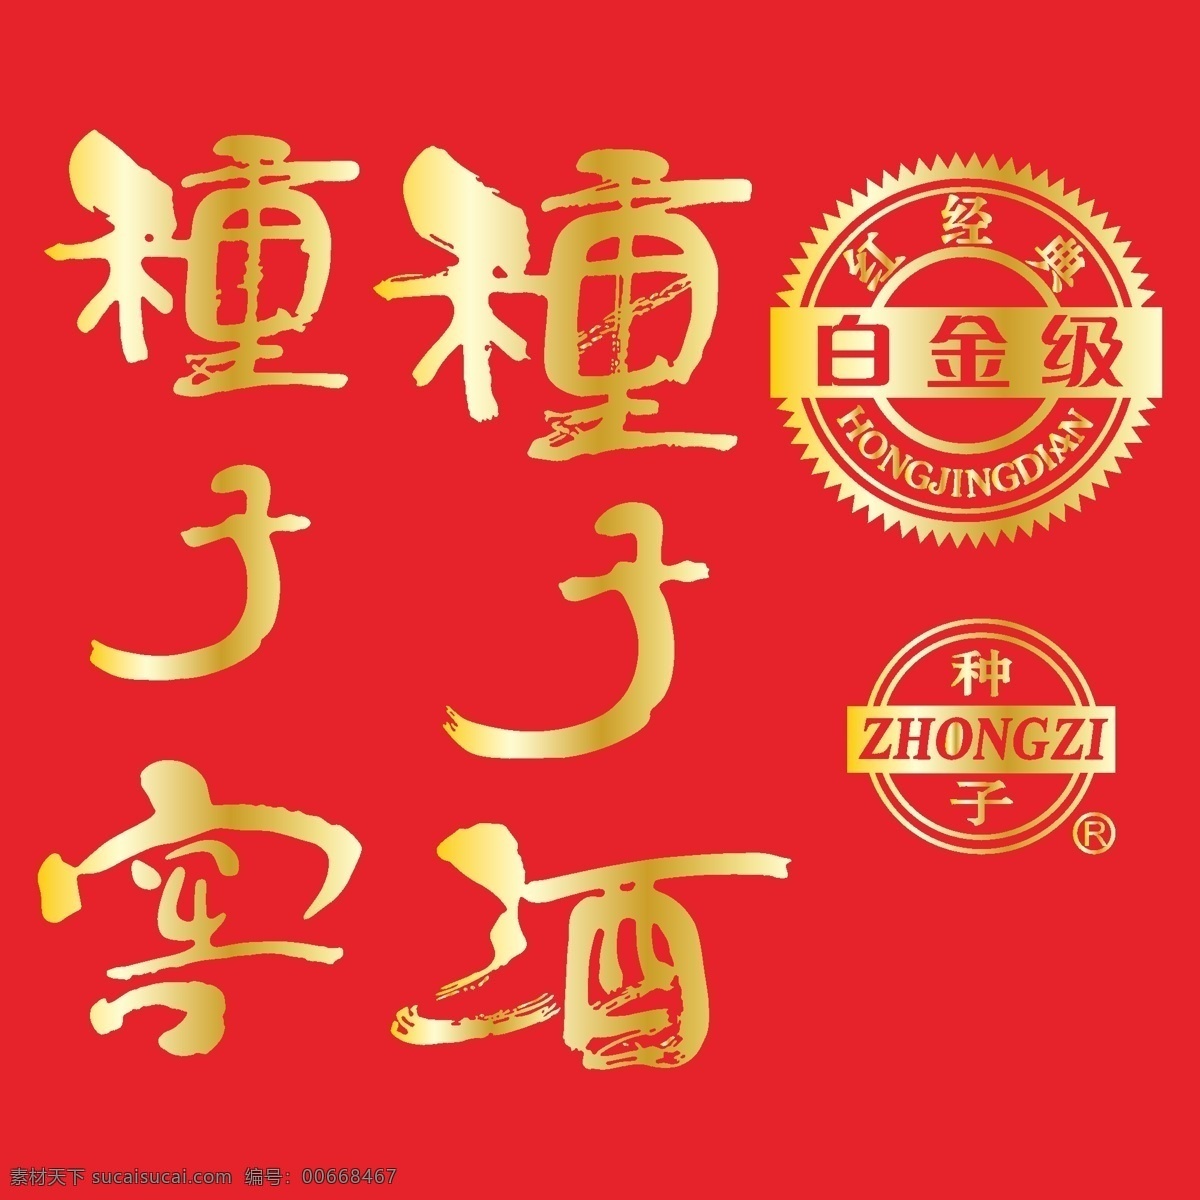 白酒 商标 logo 酒类标志 酒类素材 中国驰名商标 矢量图